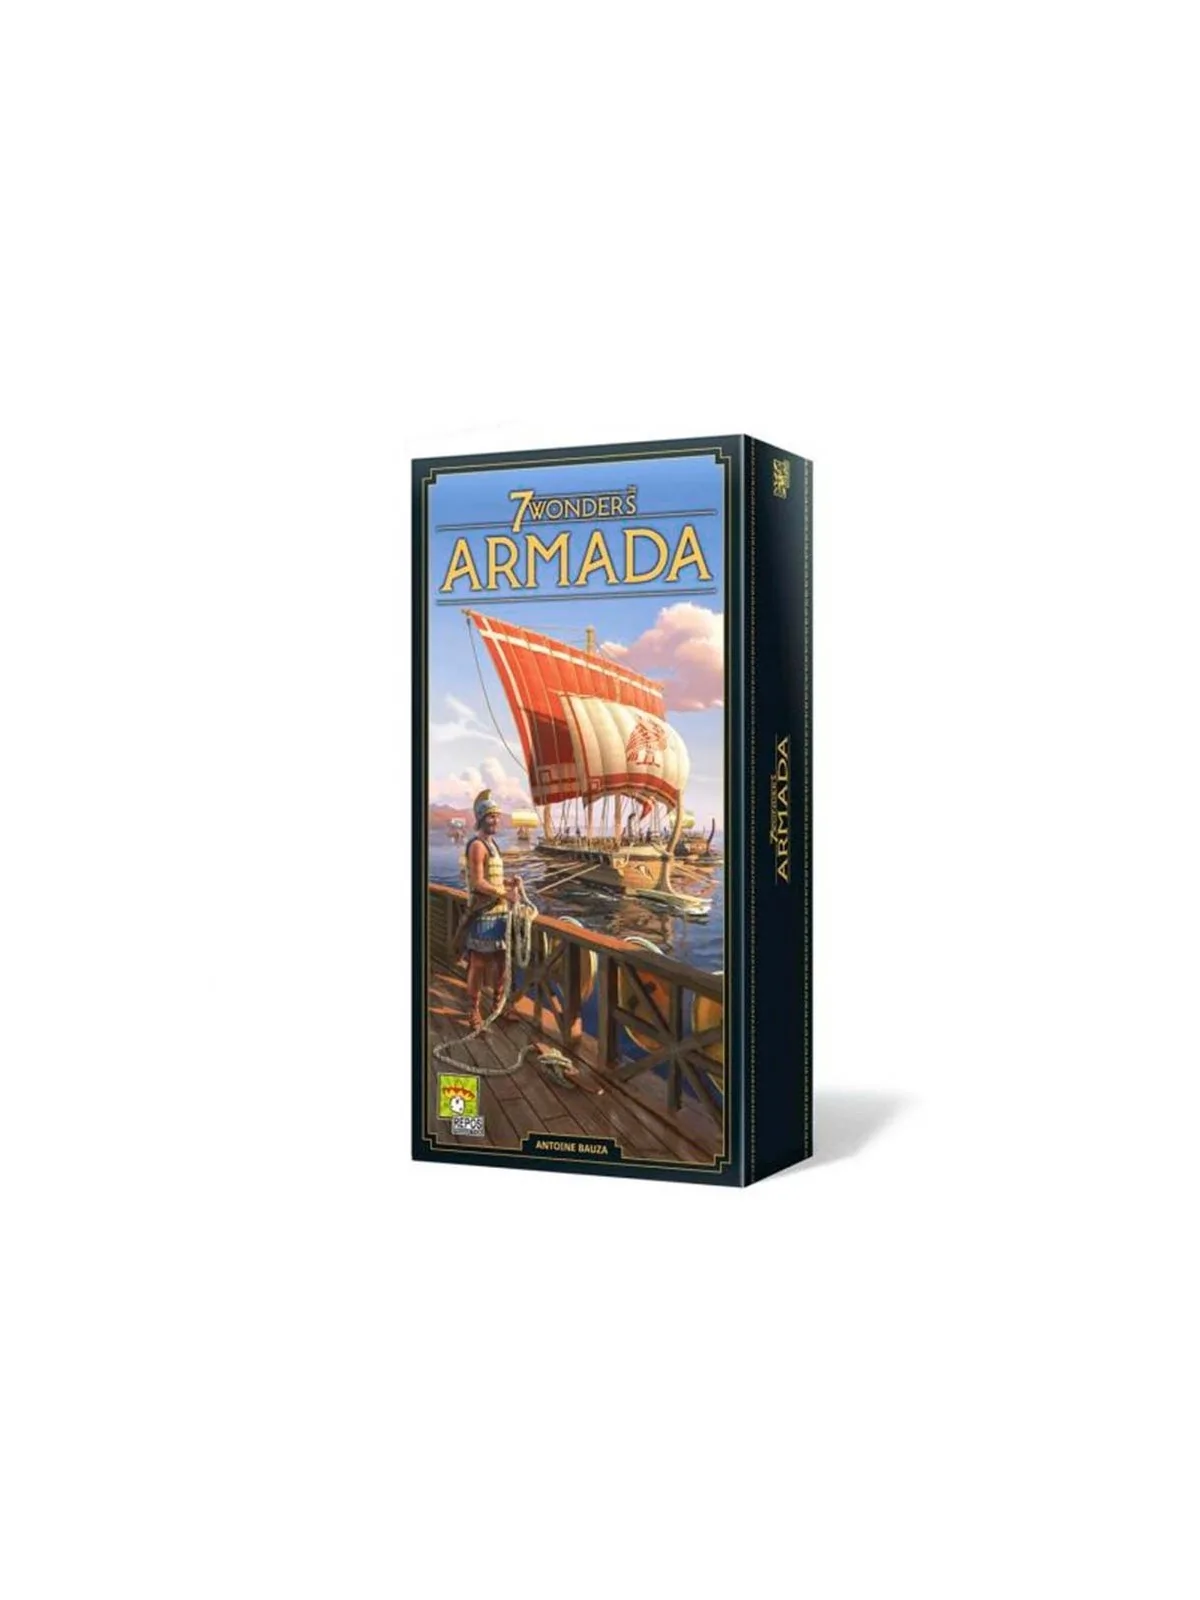 Comprar 7 Wonders: Armada - Nueva Edición barato al mejor precio 28,79